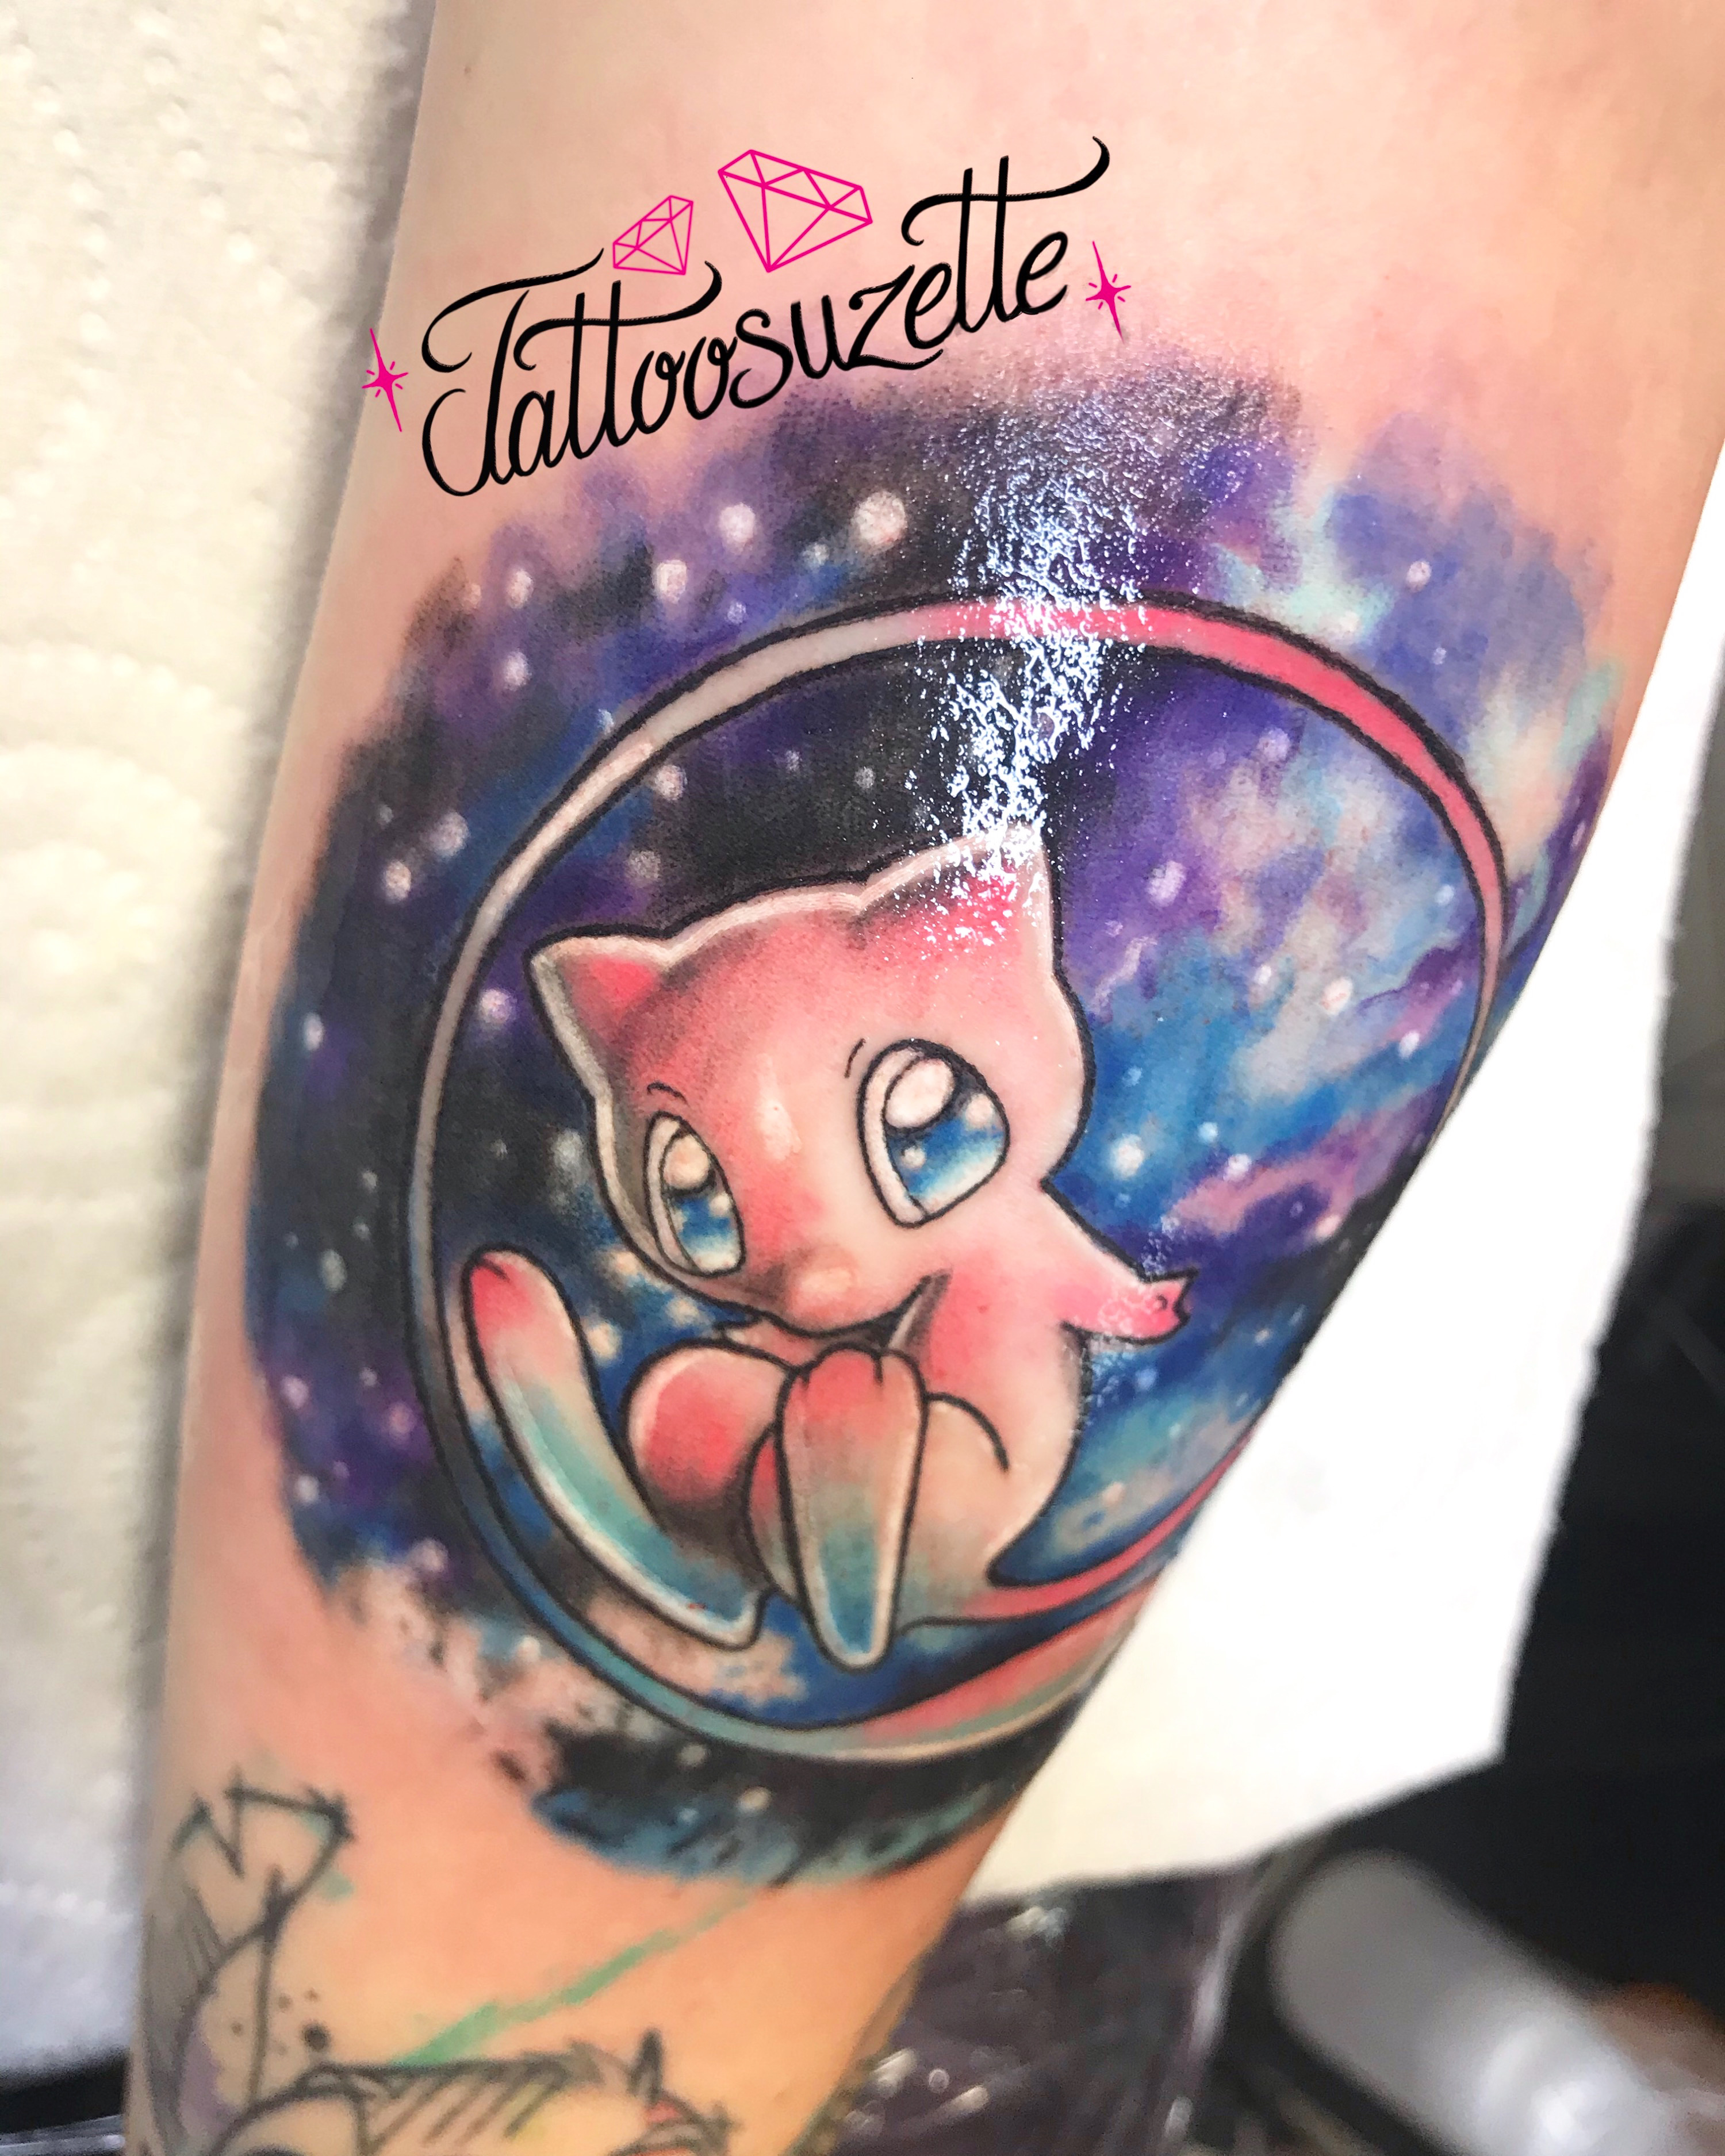 Tatouage mew pokemon by tattoosuzette on DeviantArt